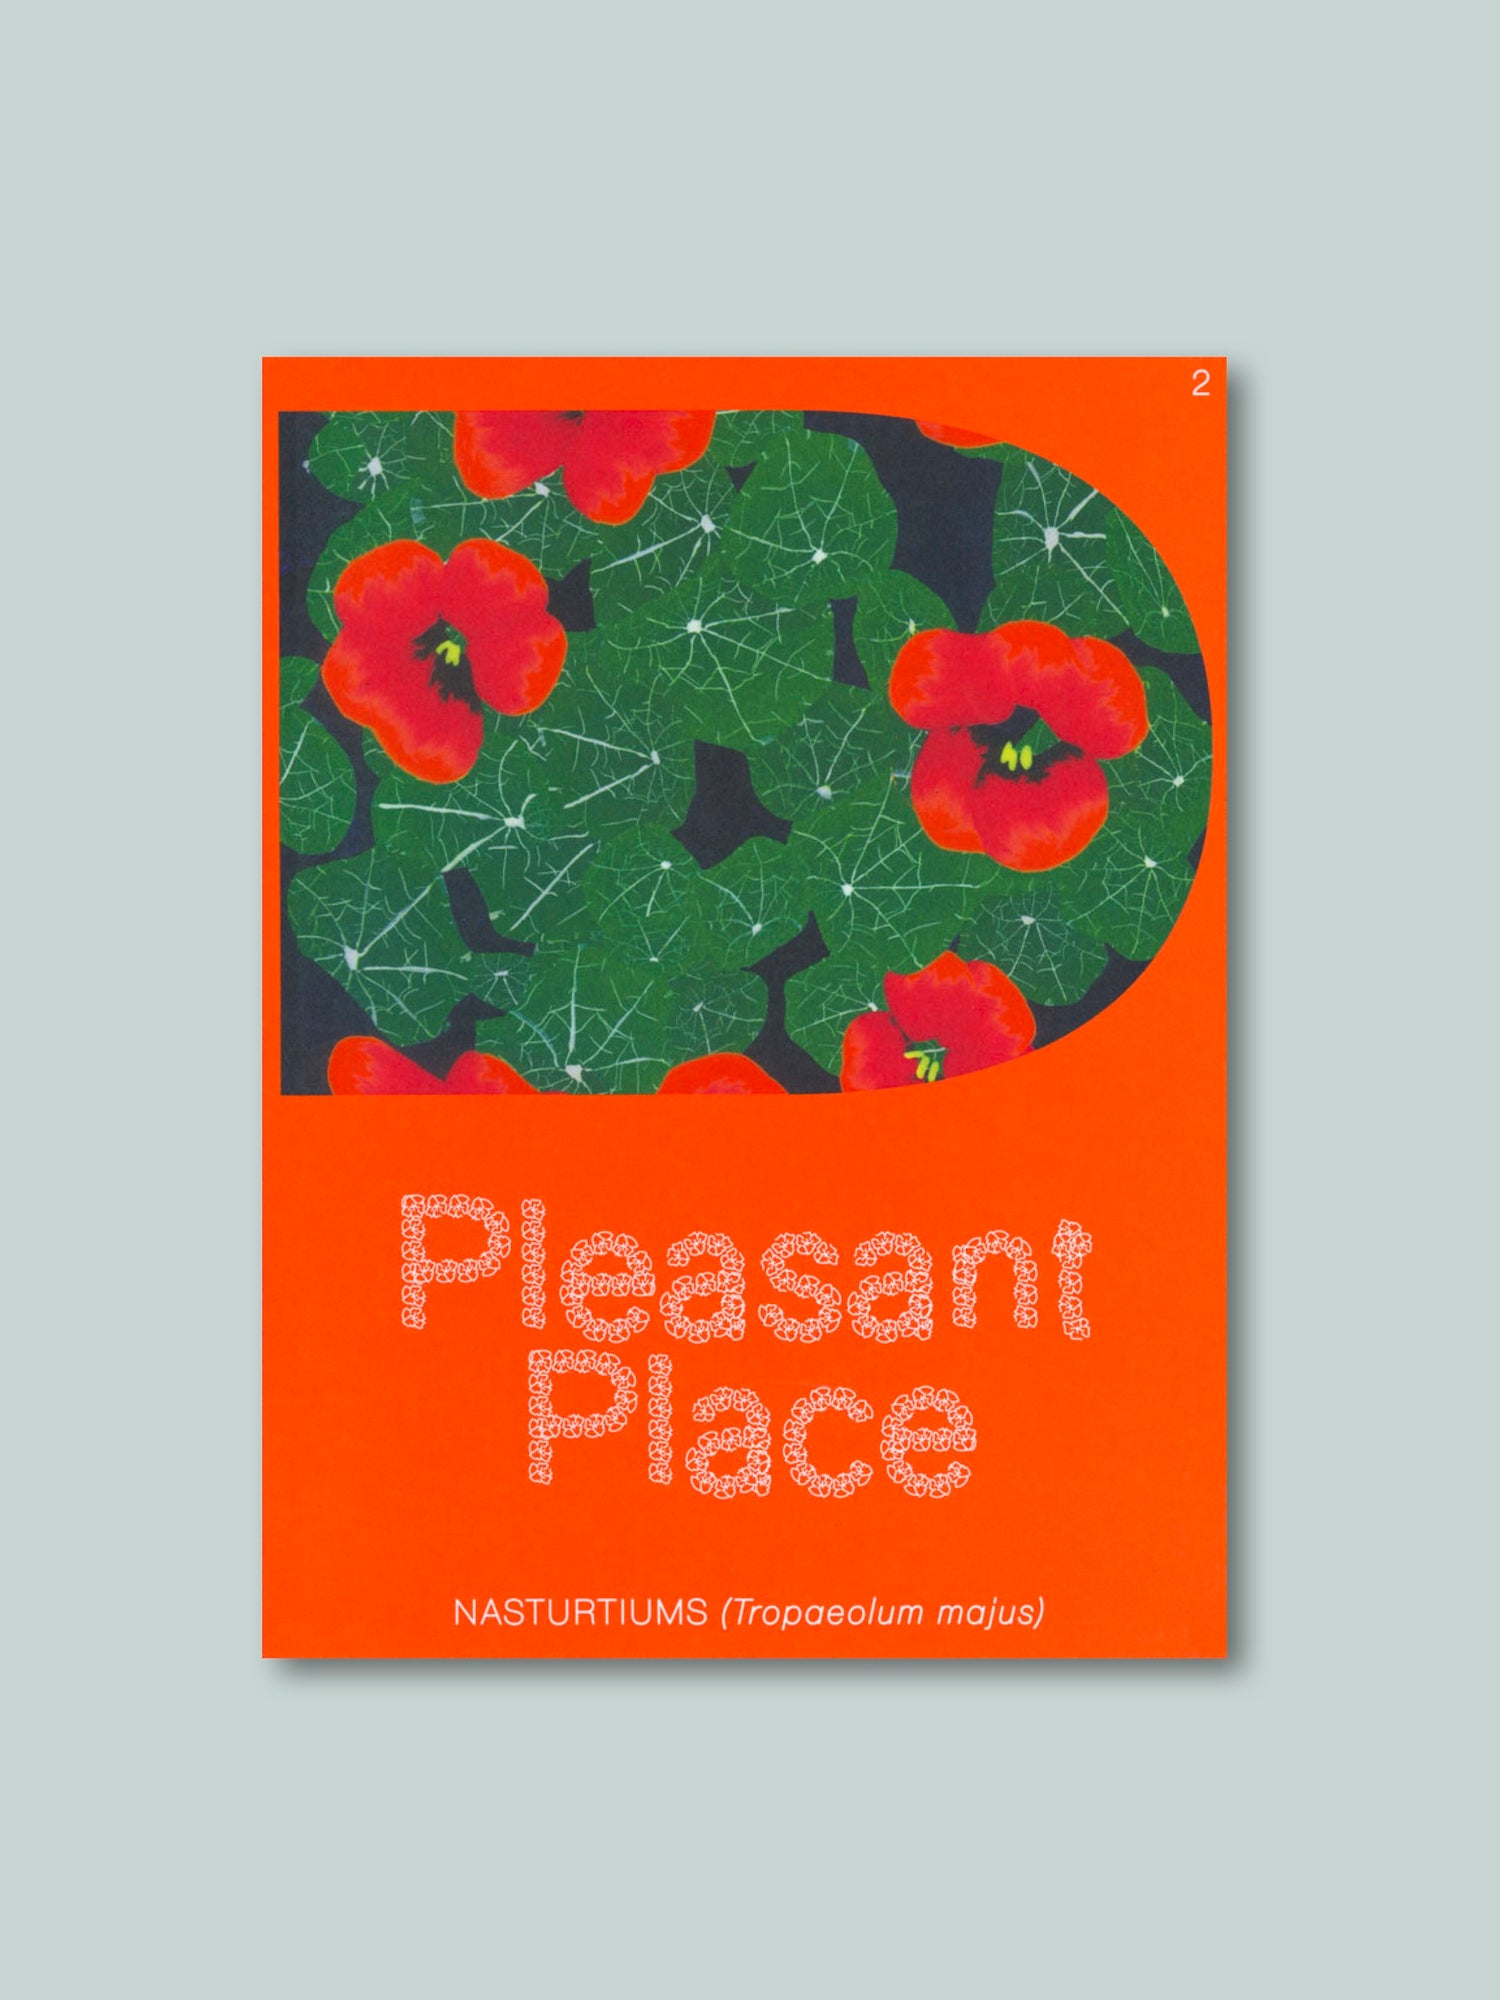 Pleasant Place